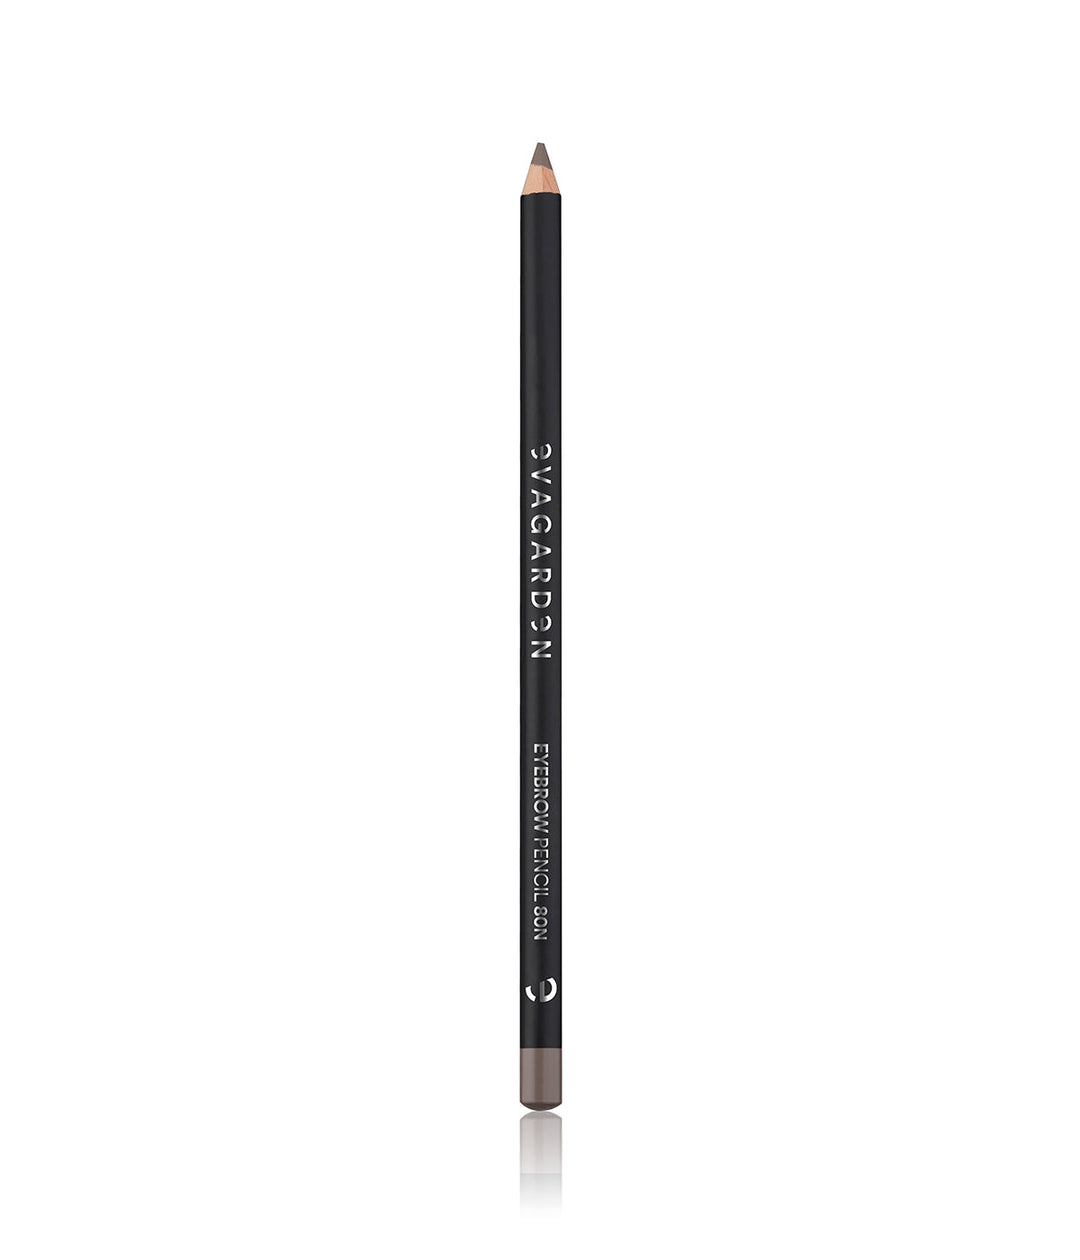 EVAGARDEN make up Eyebrow Pencil